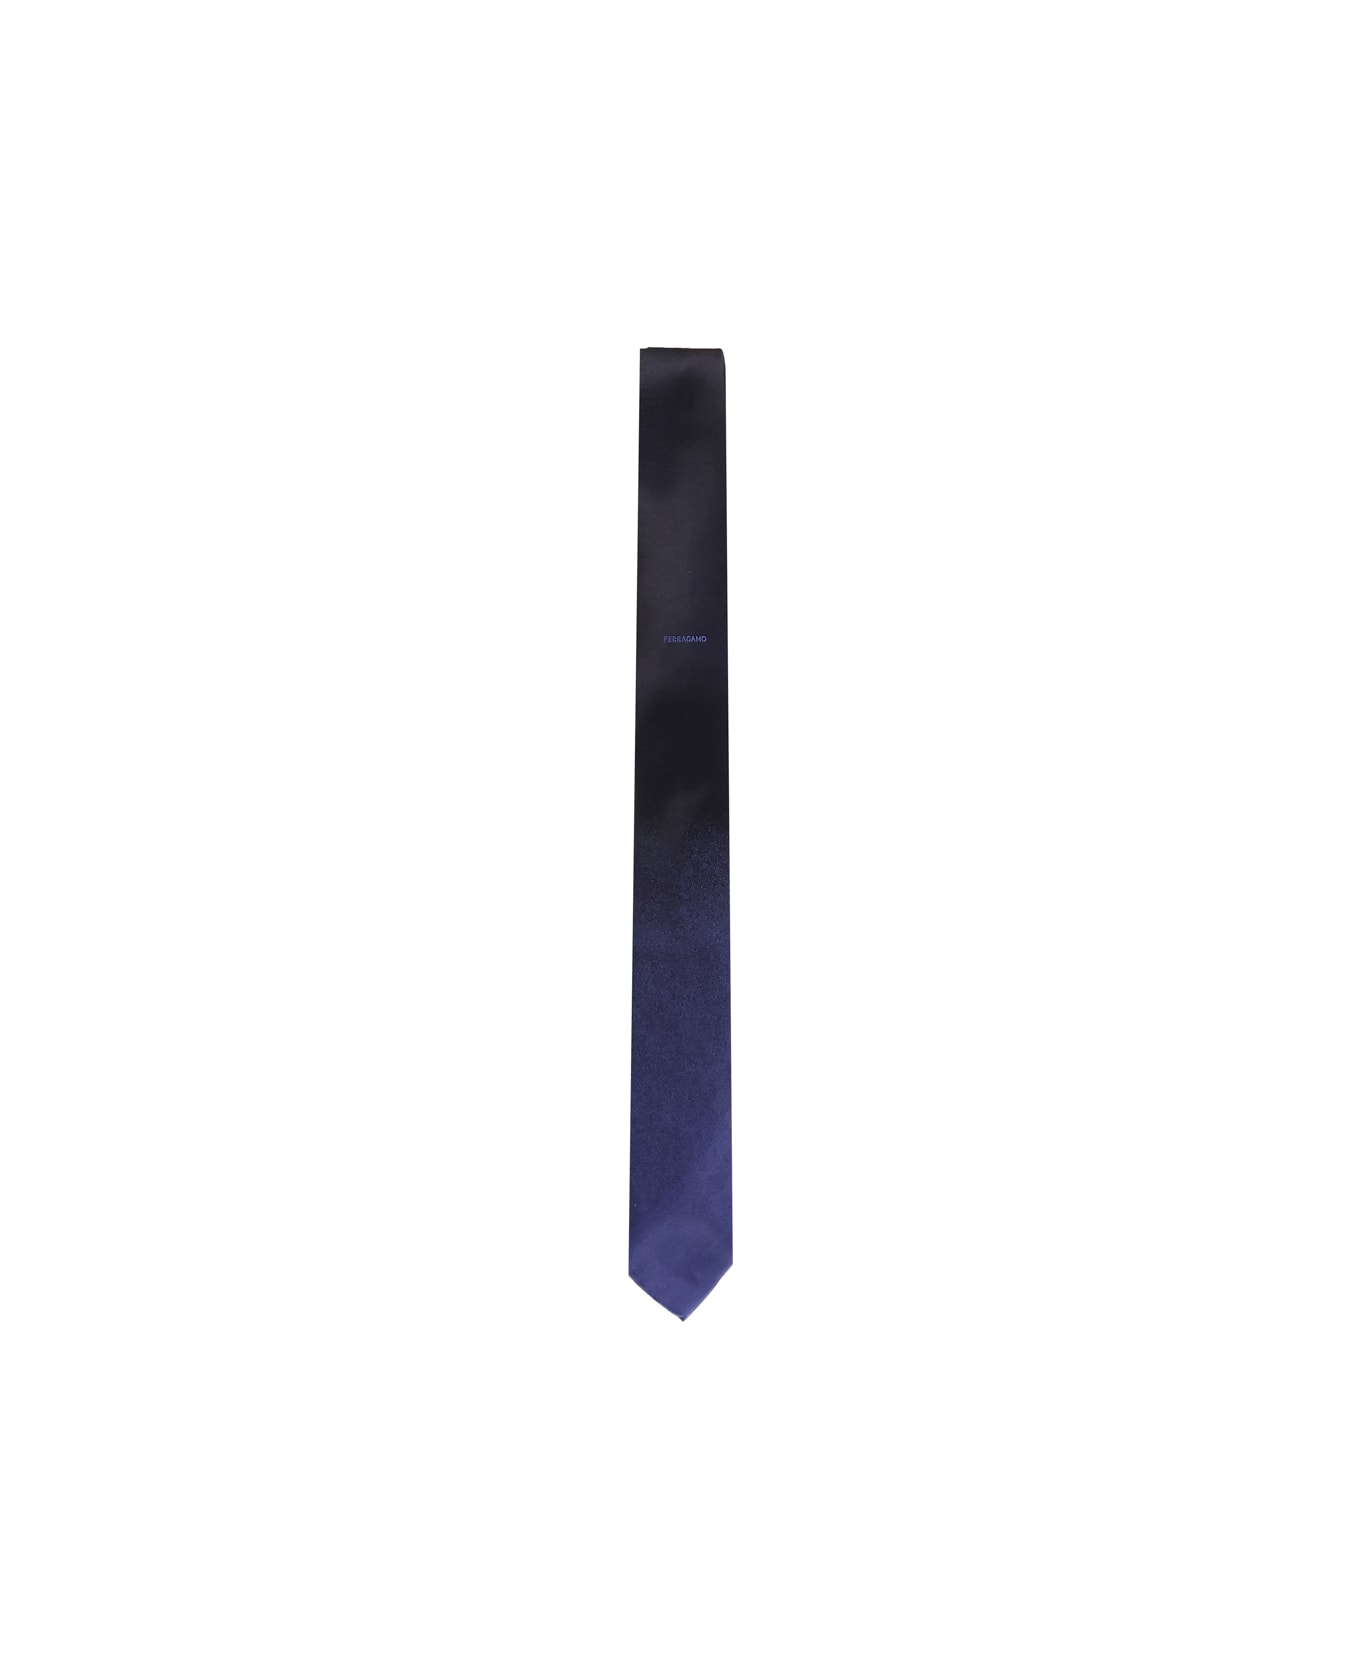 Ferragamo Tie With Shaded Effect - Black blu